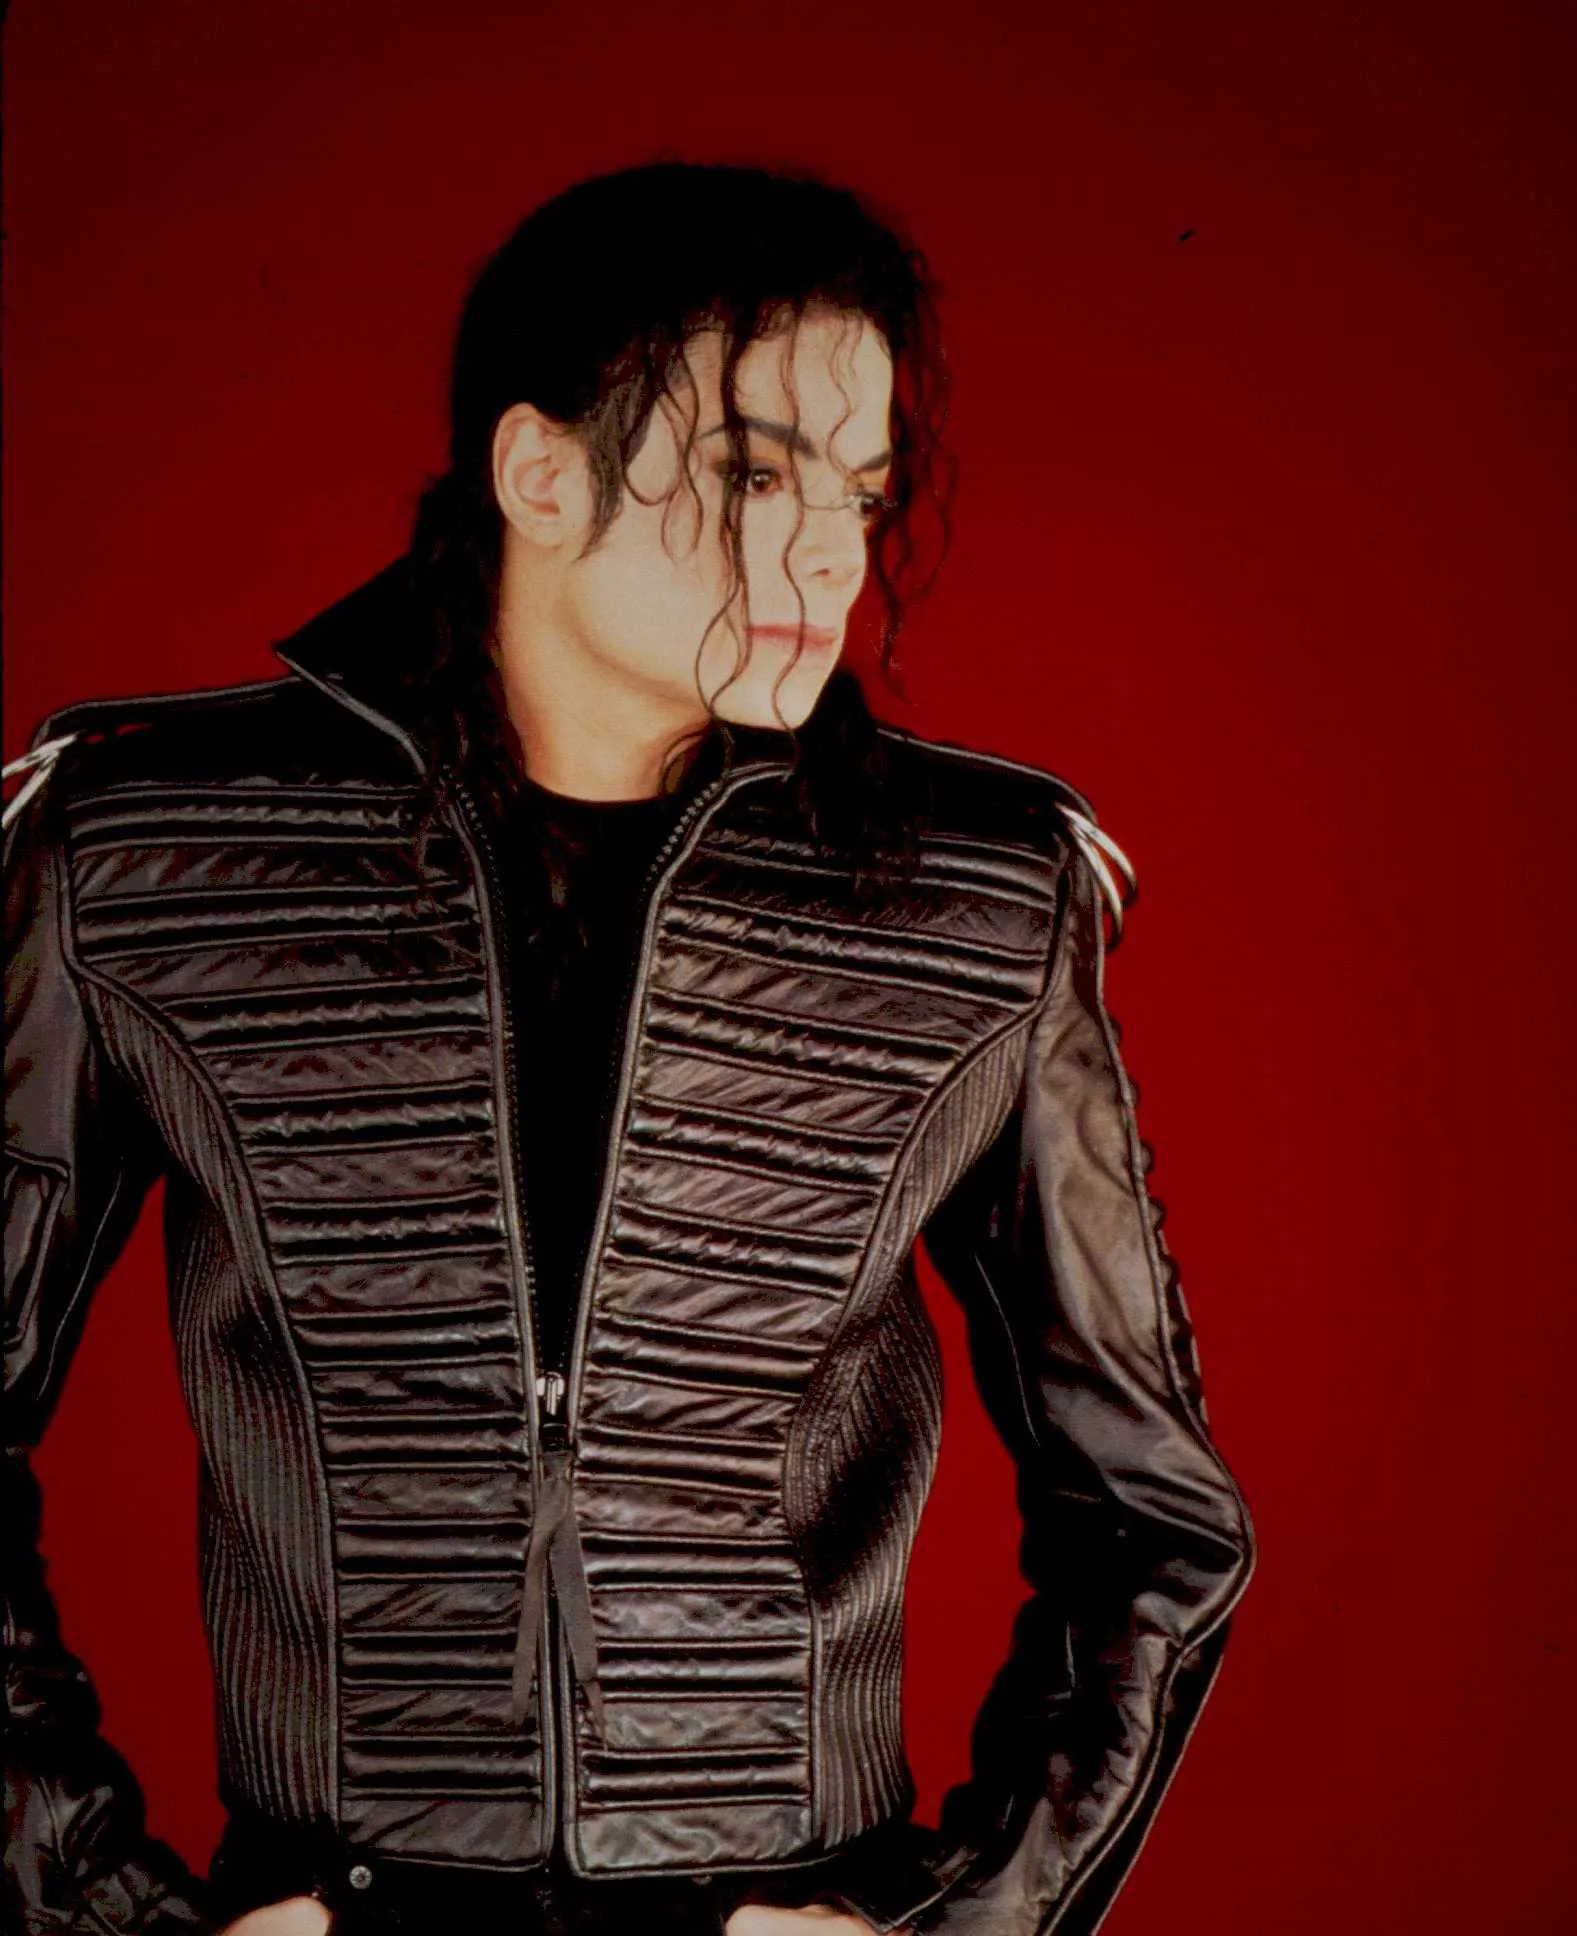 Stor engelsk radiokanal er stoppet med at spille Michael Jackson 